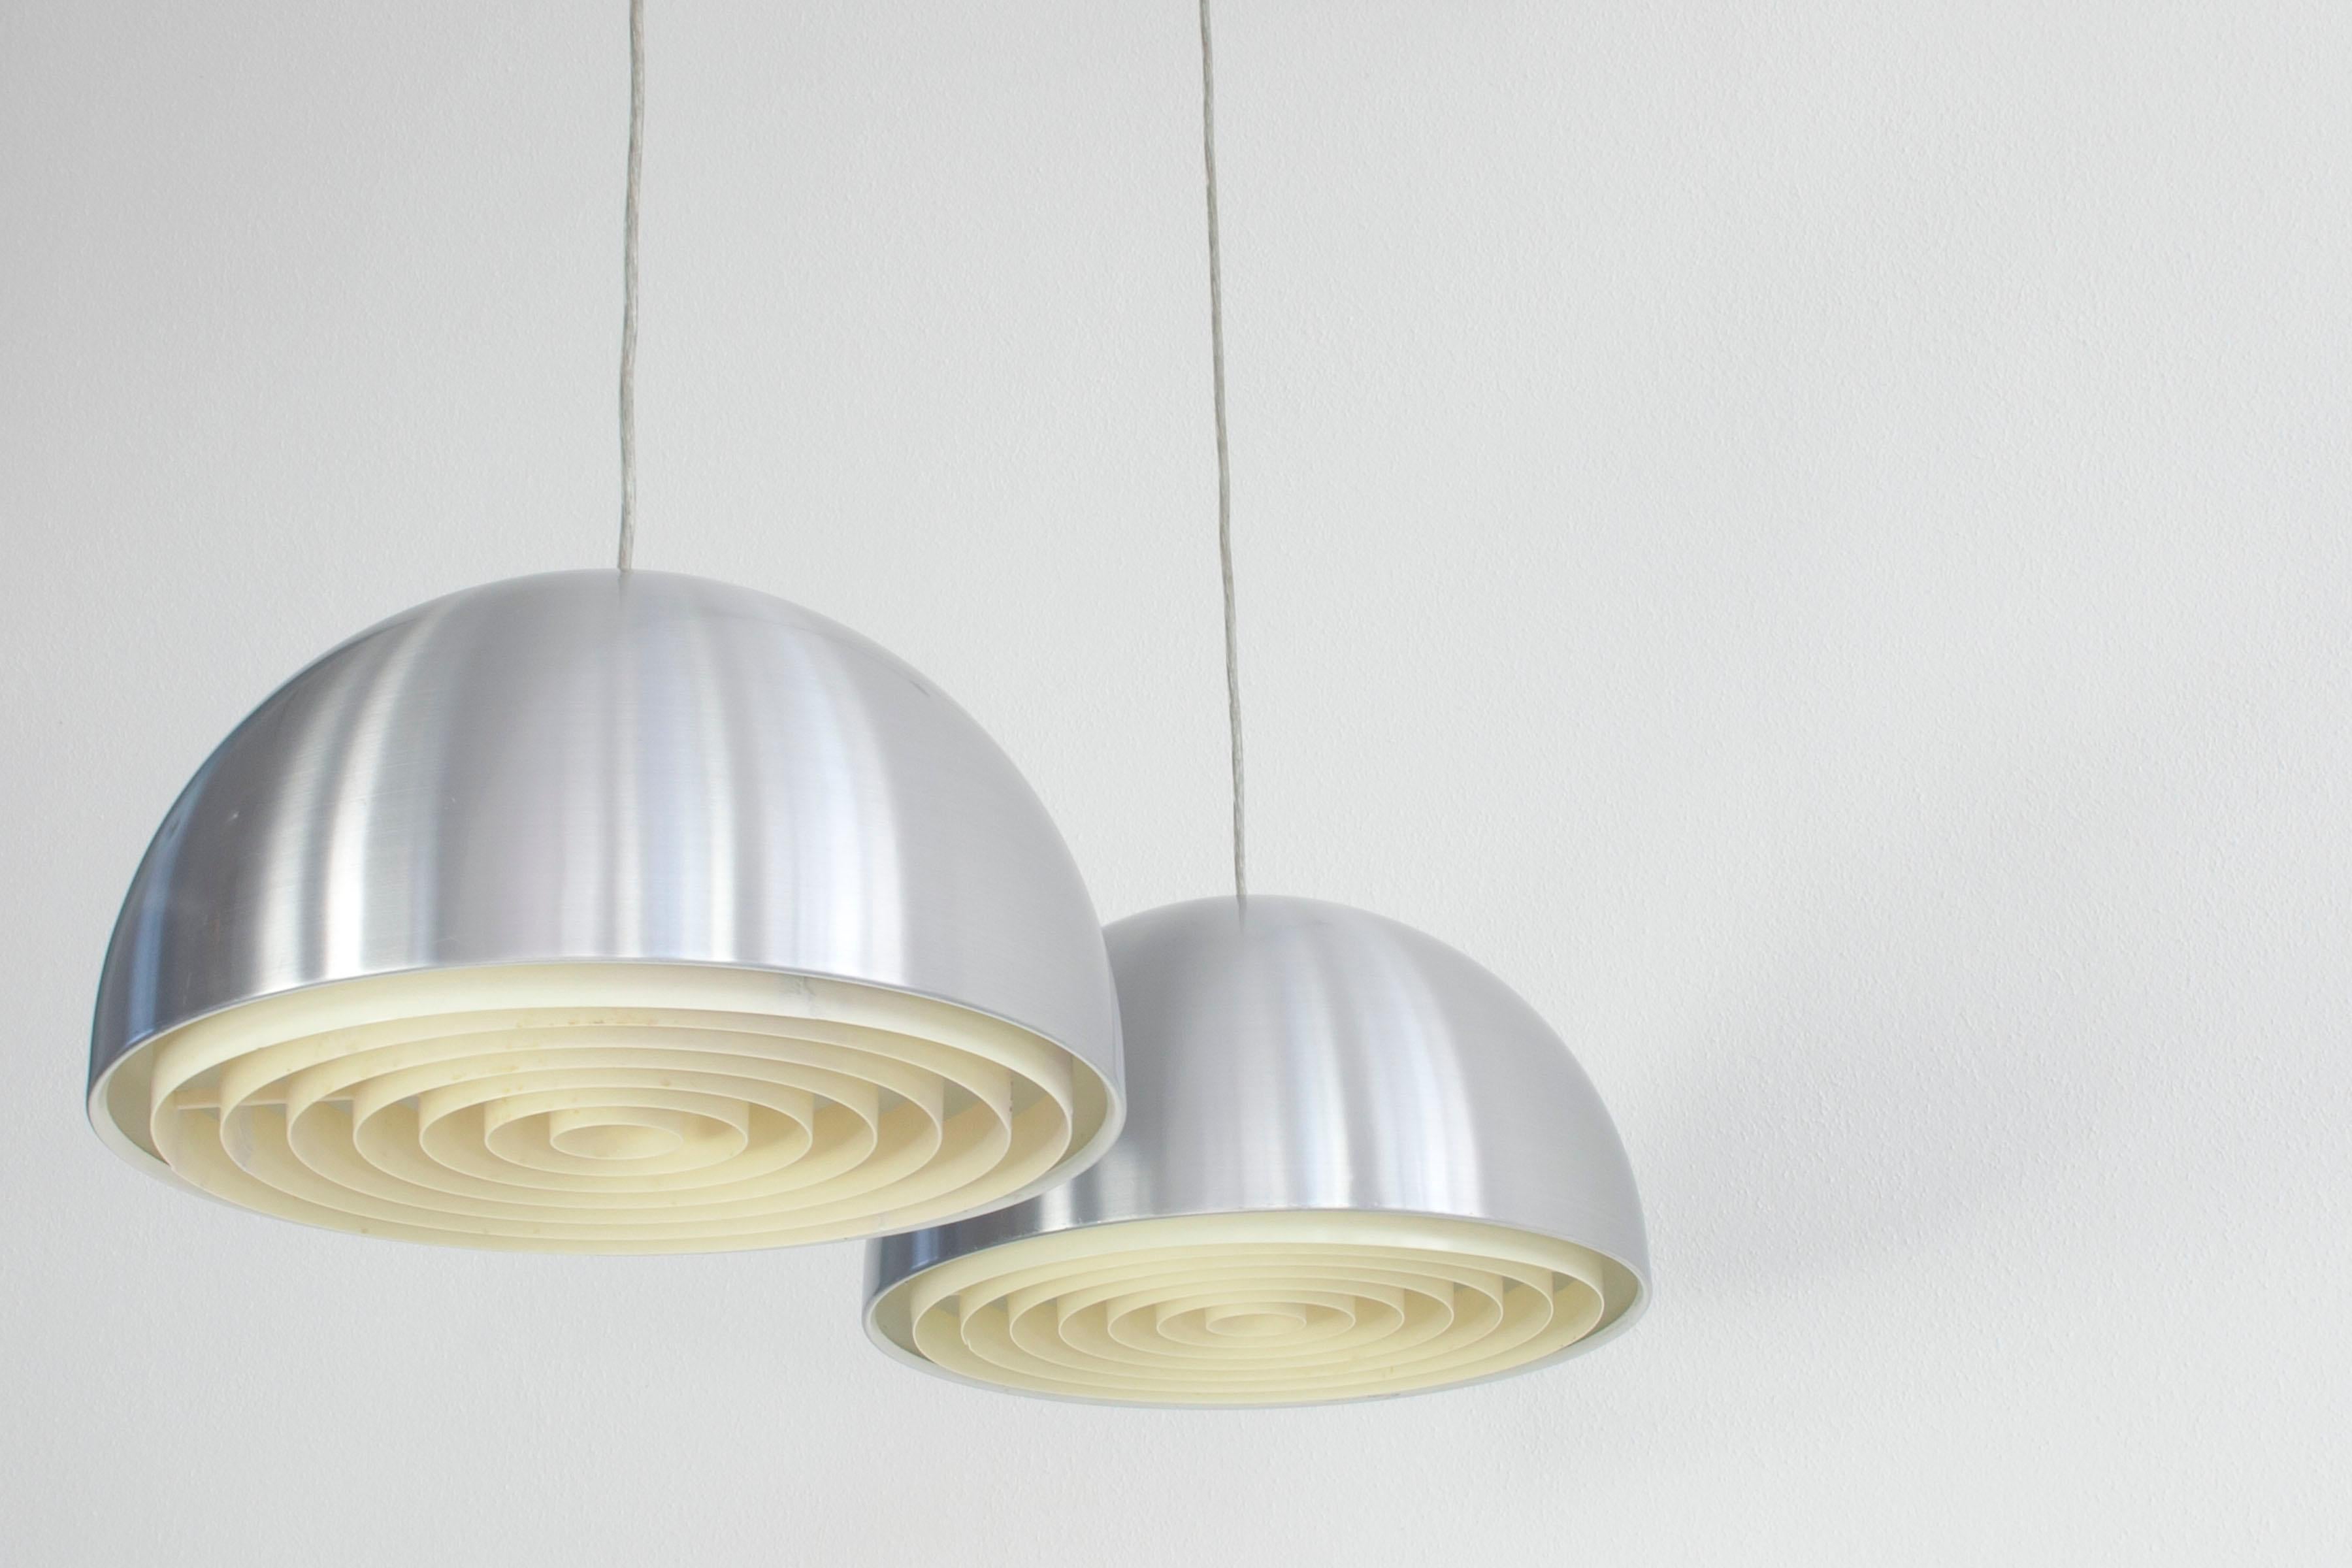 Ensemble de 2 lampes suspendues Lousiane par Vilhelm Wohlert pour Poulsen, Danemark années 1960. L'abat-jour hémisphérique est en aluminium brossé avec un diffuseur en plastique blanc à l'intérieur. La lampe est électrifiée avec un fil E27. 